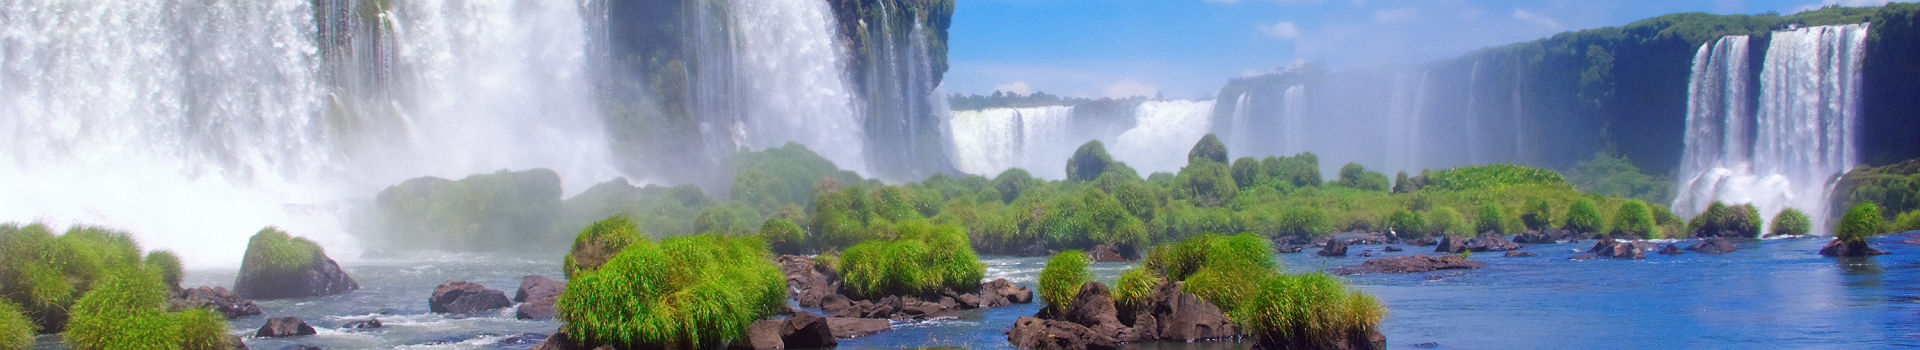 Les chutes d'Iguaçu au Brésil et en Argentine